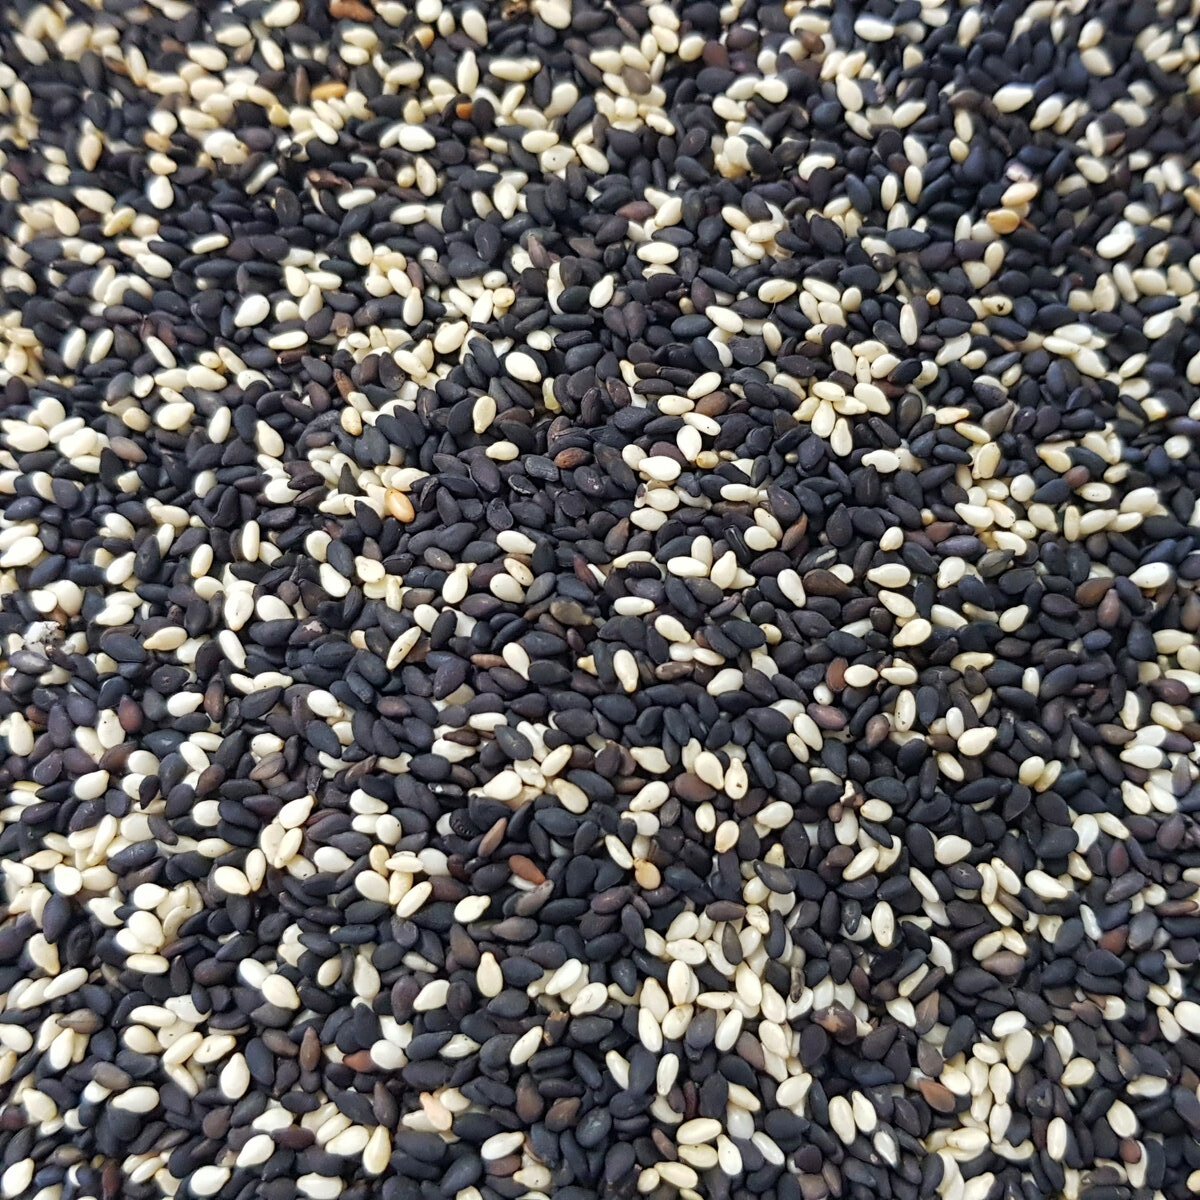 dry roasted sesame seeds